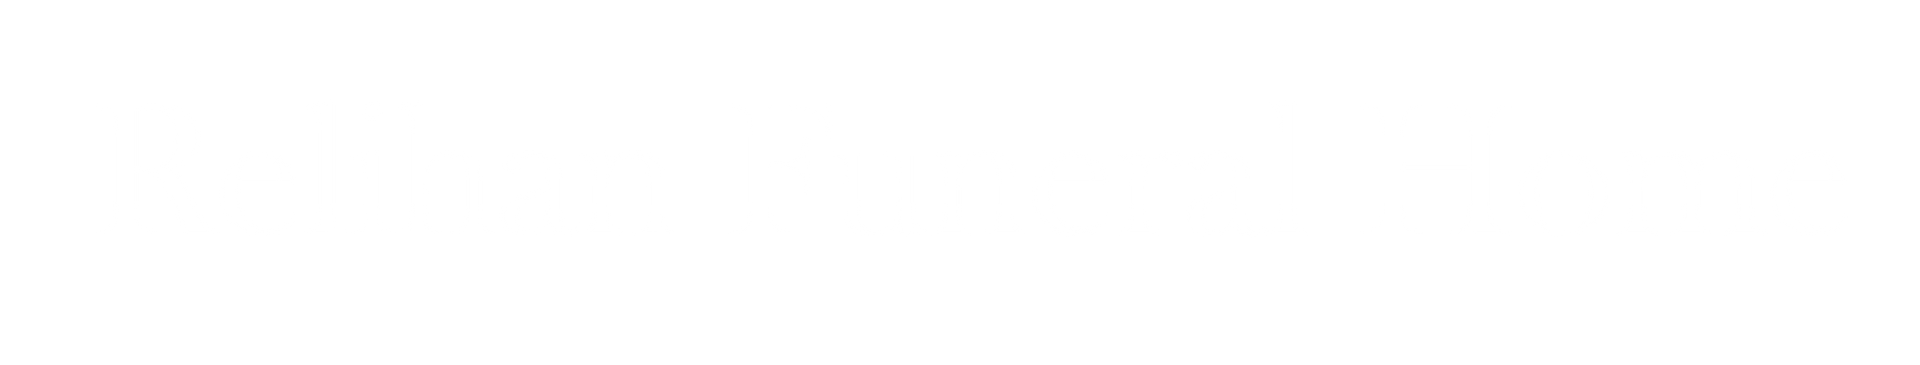 Relihan Funeral Home Logo